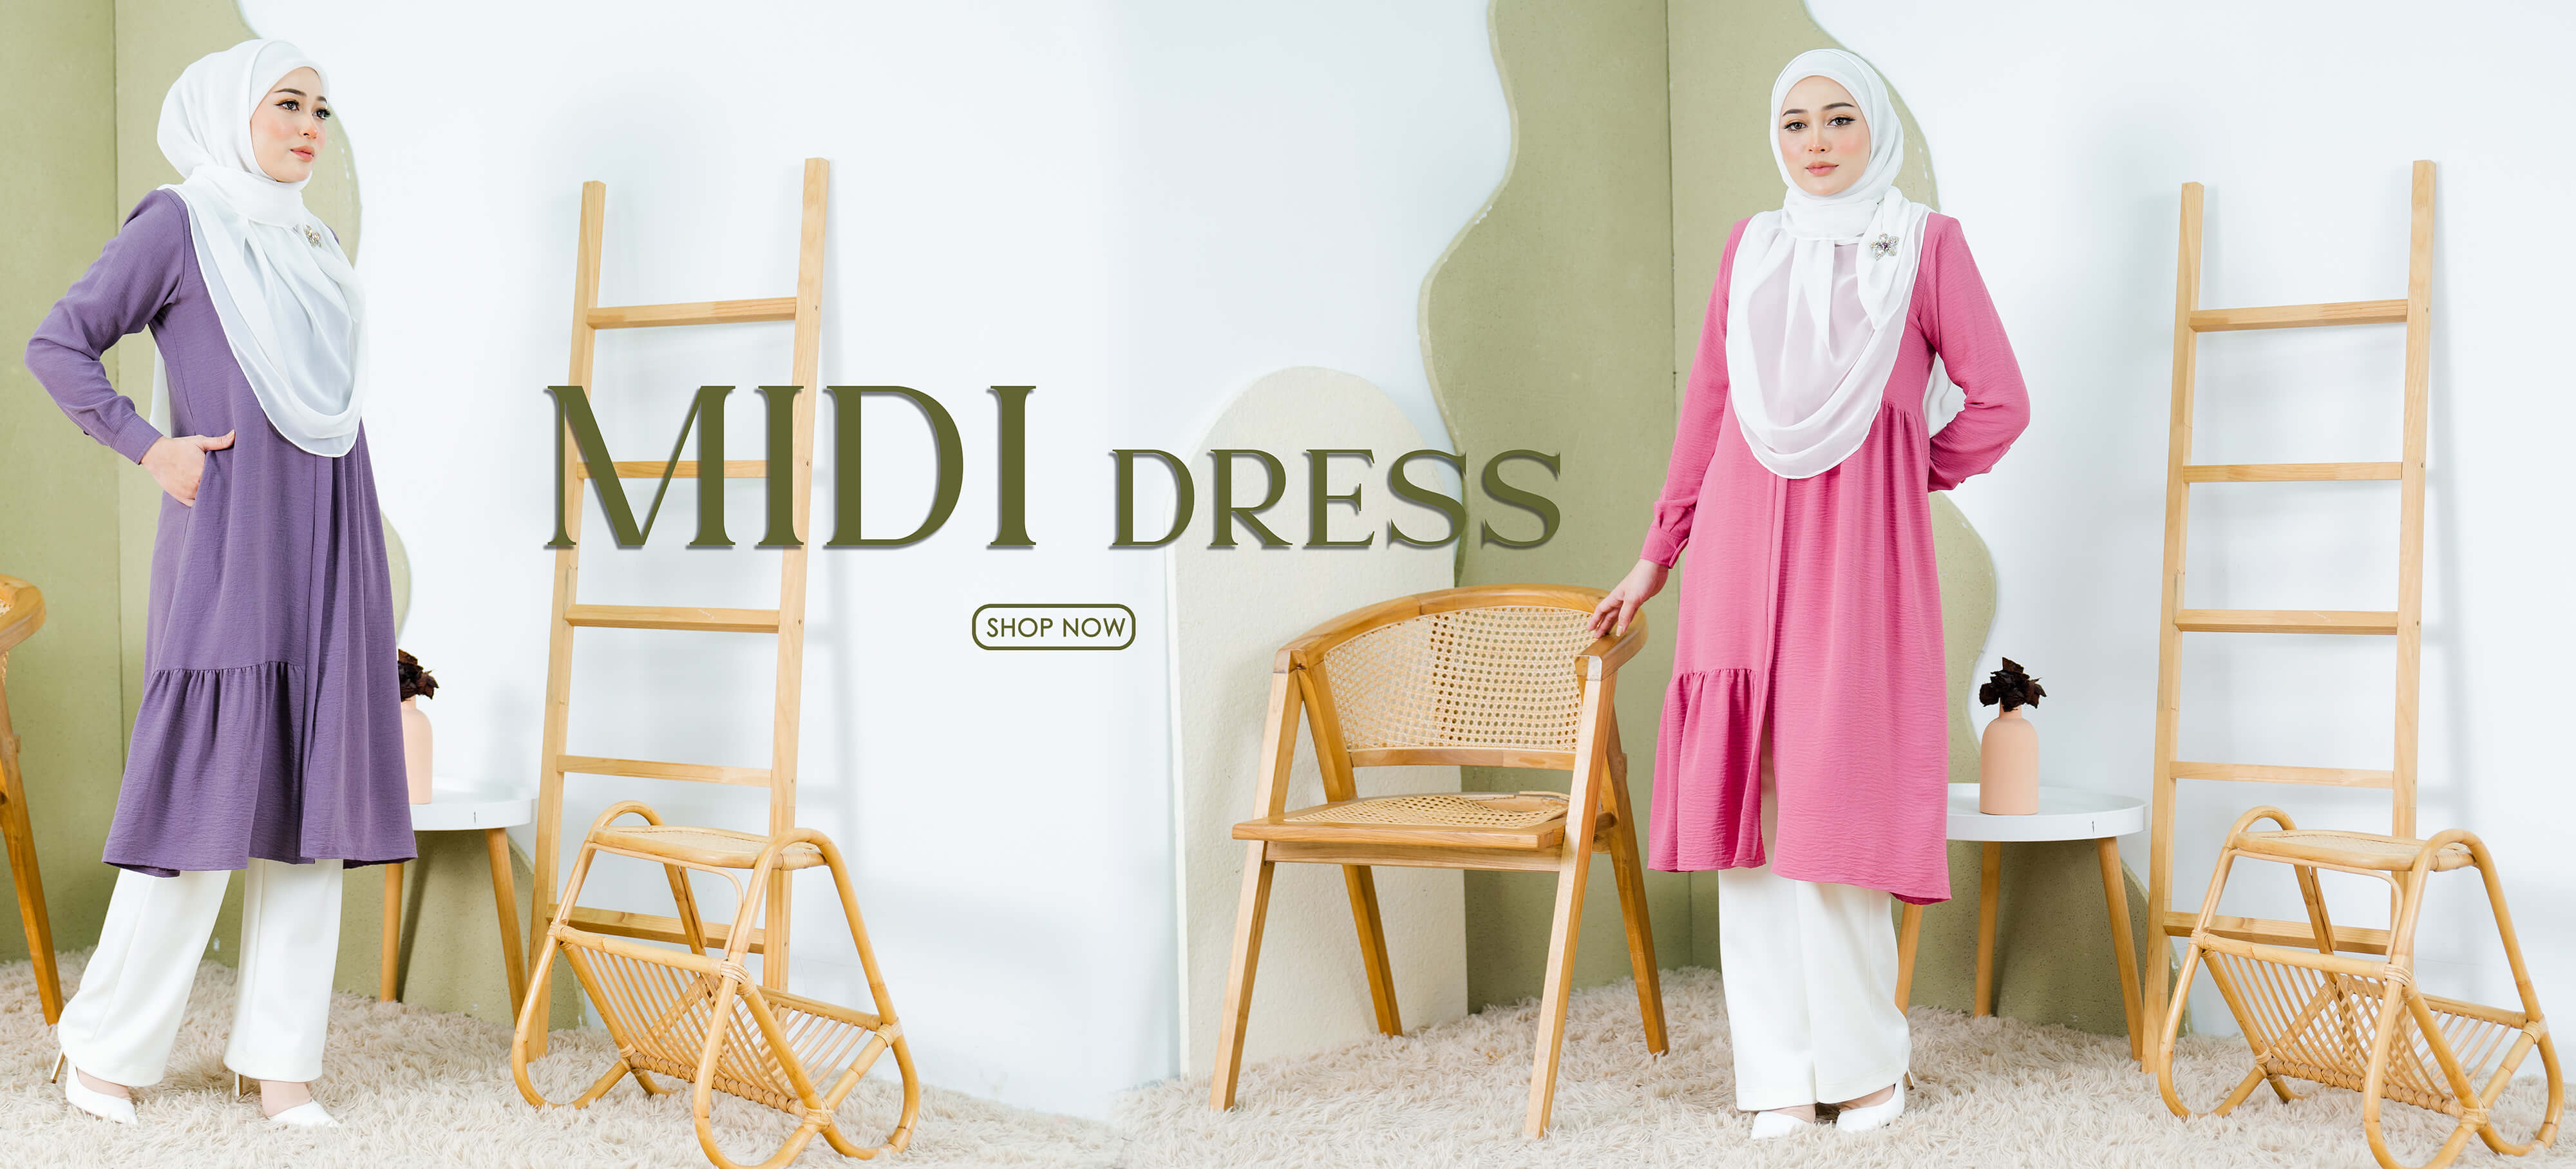 Midi Dress 5.0